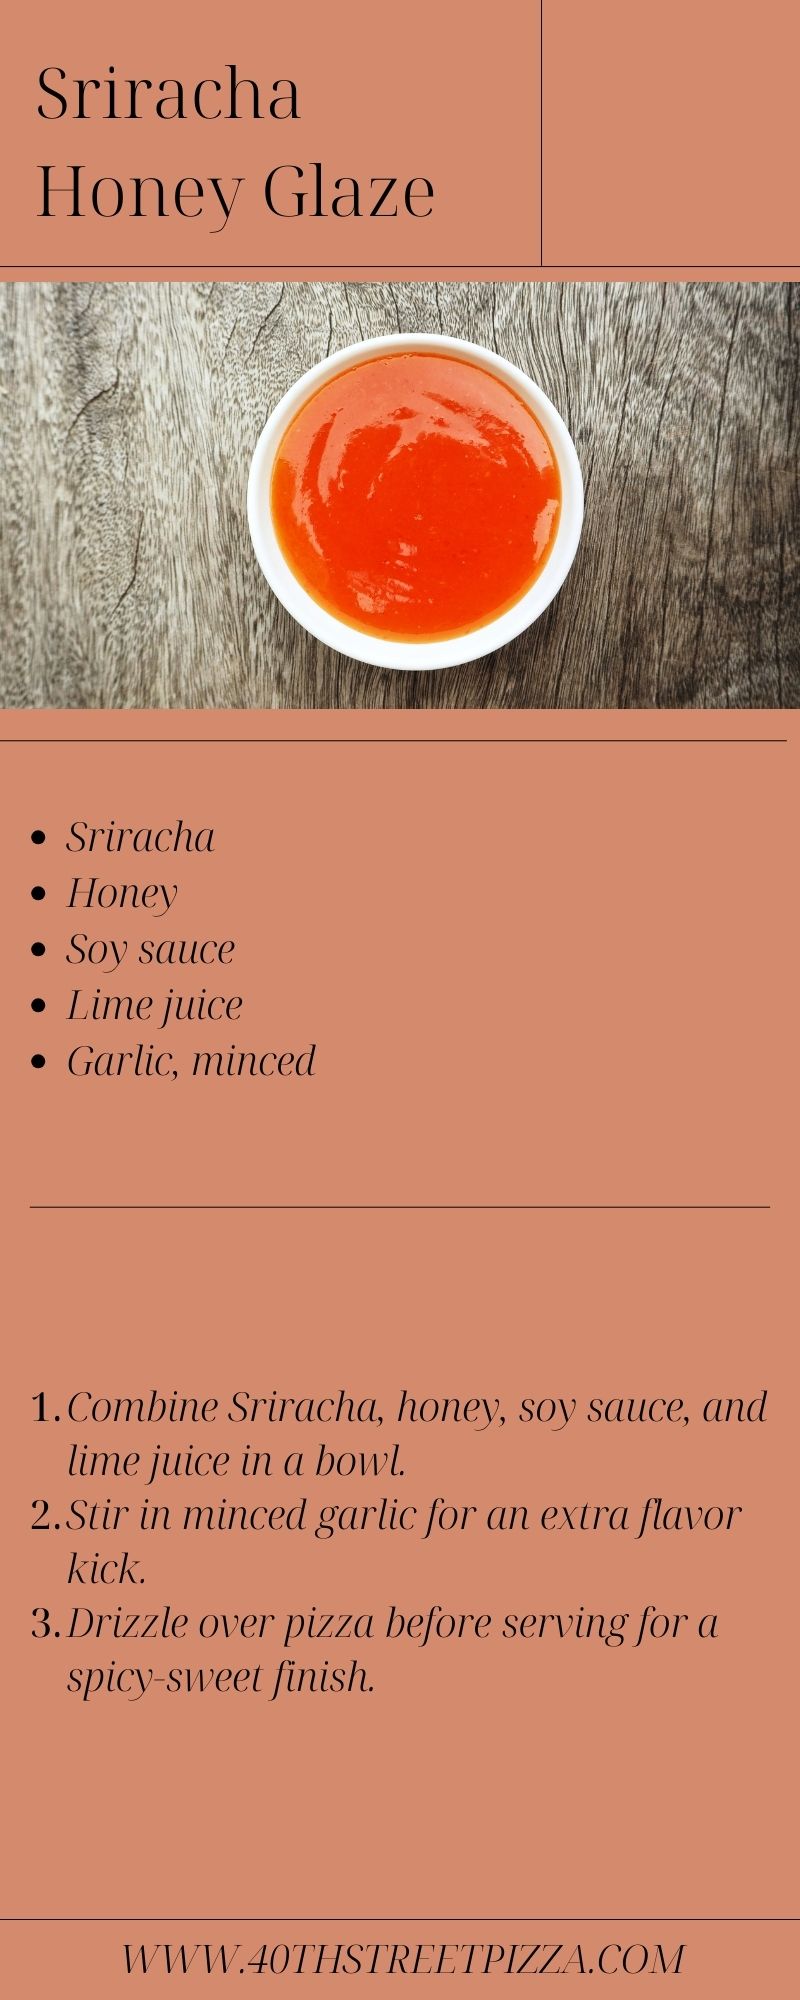 Sriracha Honey Glaze infographic